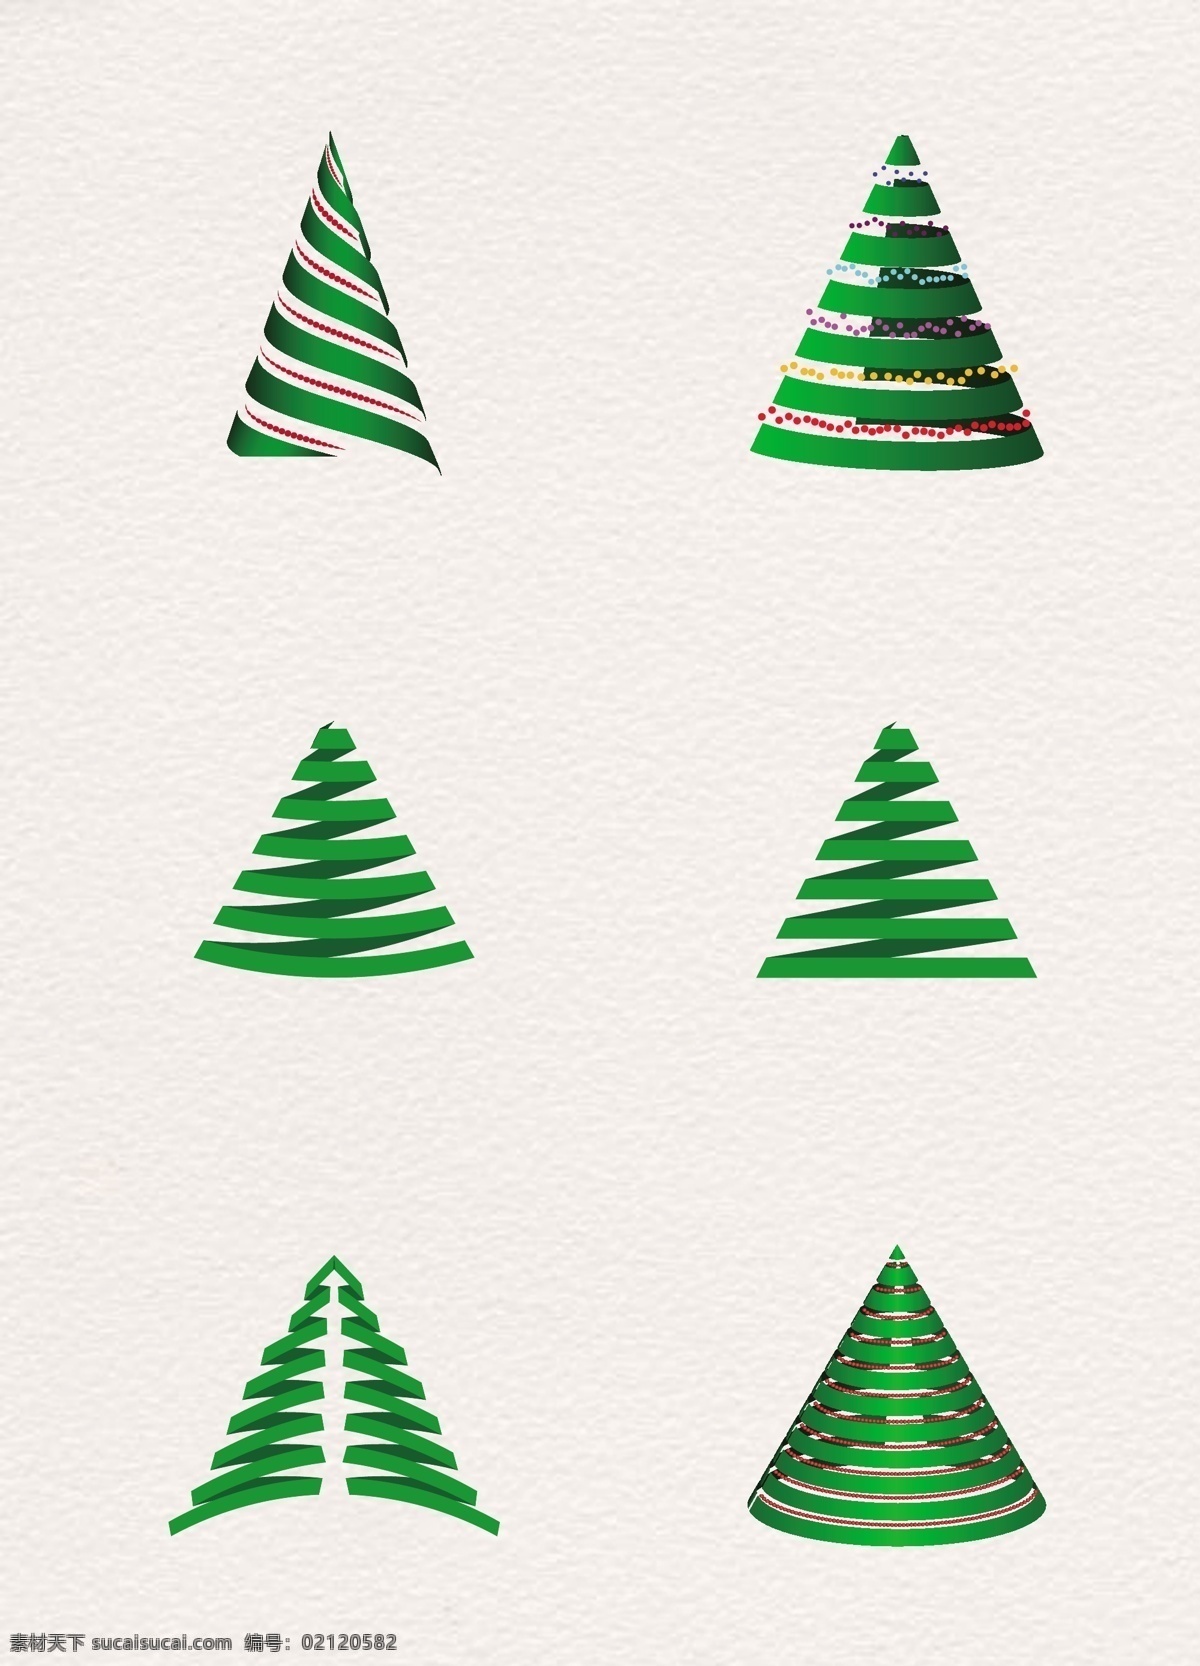 扁平化 绿色 圣诞树 矢量 植物 节日元素 装饰图案 简约设计